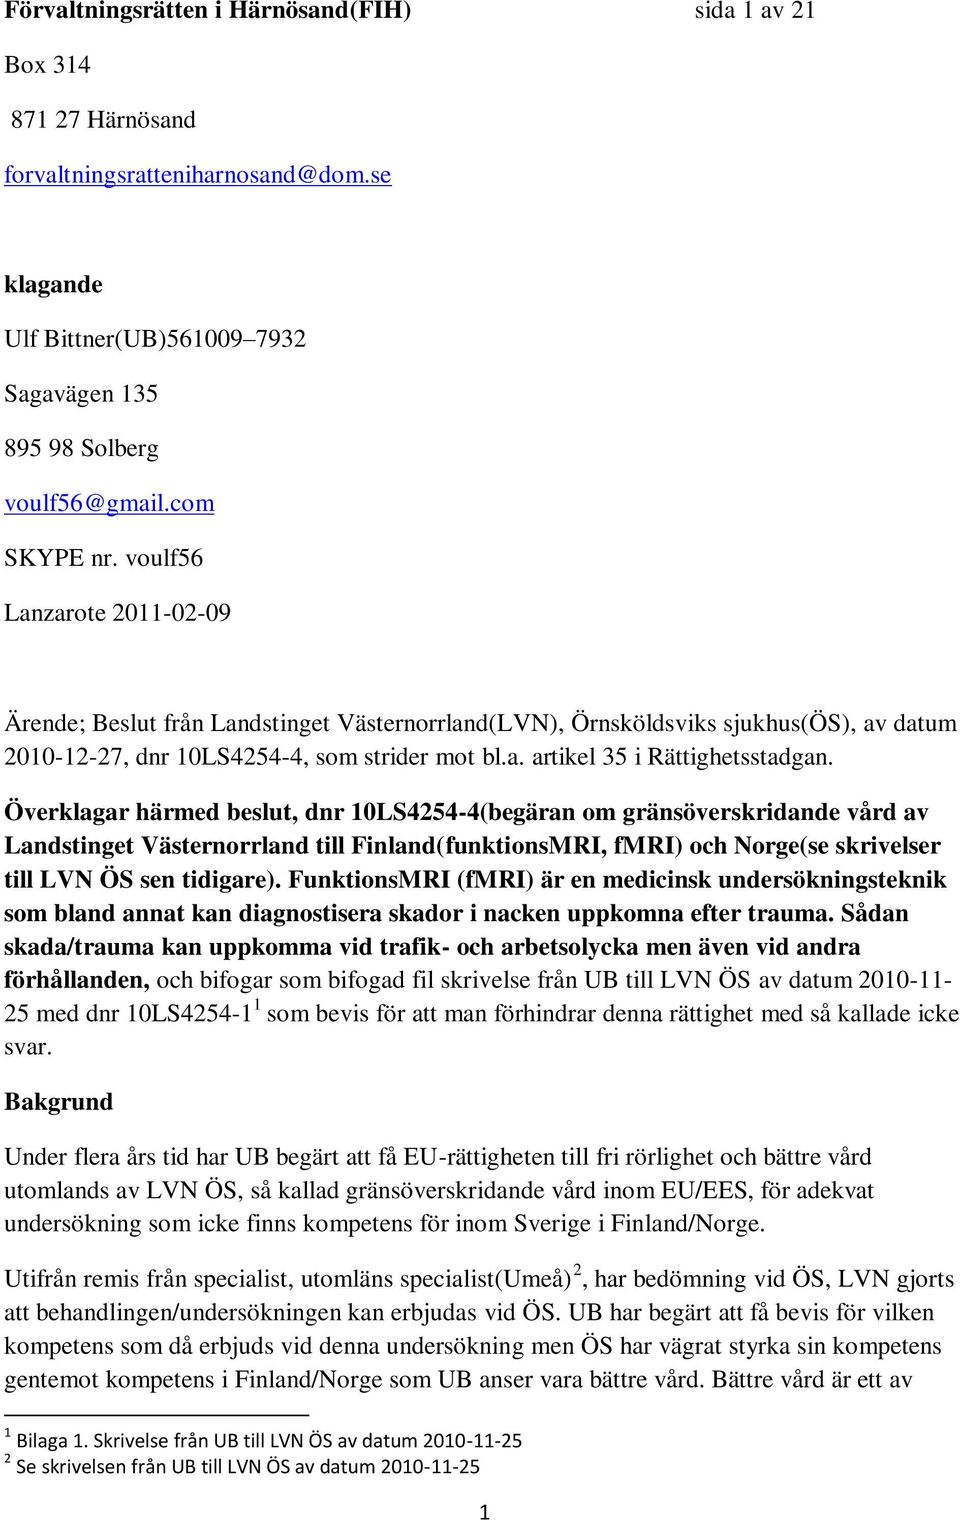 Överklagar härmed beslut, dnr 10LS4254-4(begäran om gränsöverskridande vård av Landstinget Västernorrland till Finland(funktionsMRI, fmri) och Norge(se skrivelser till LVN ÖS sen tidigare).